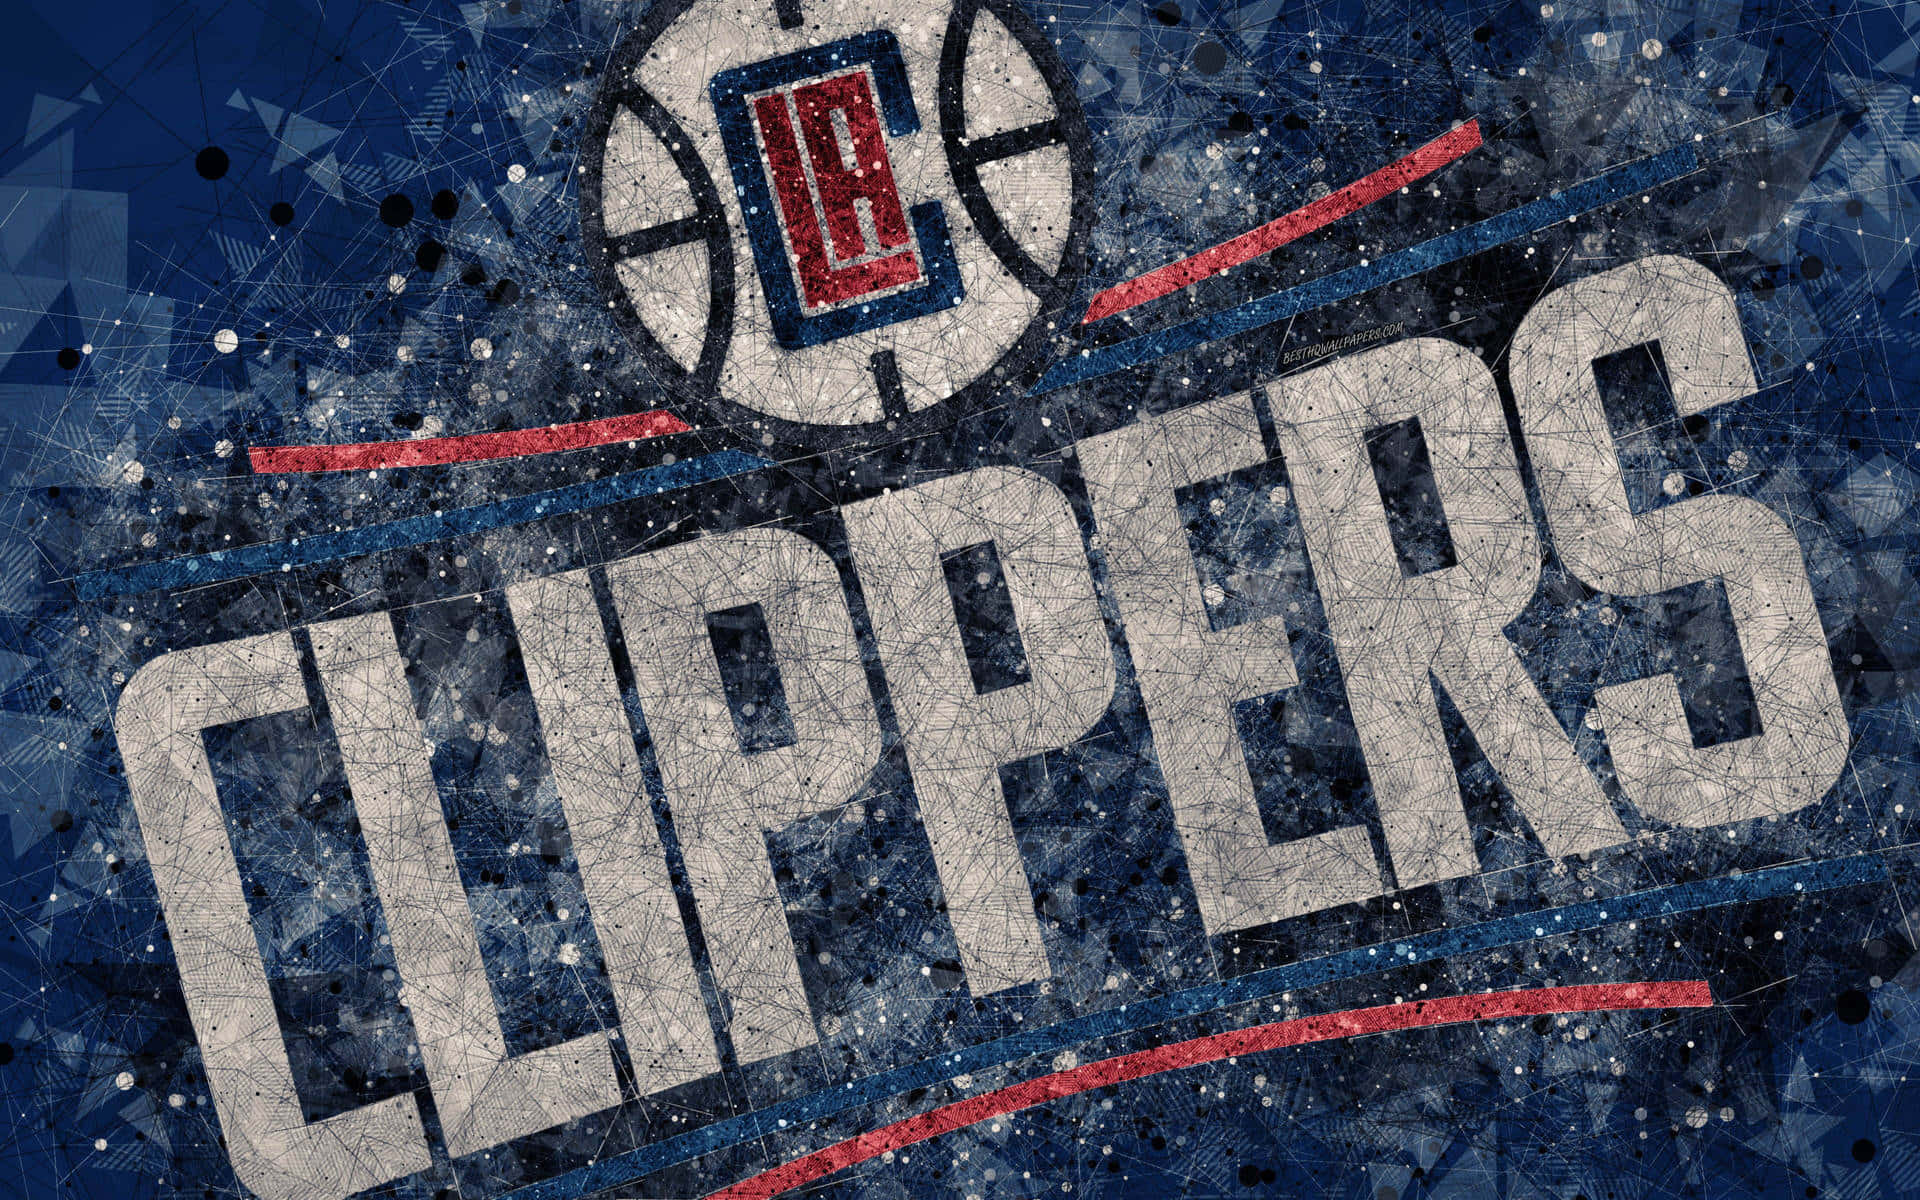 2015 LA Clippers Insignia Abstract Digital Art Wallpaper